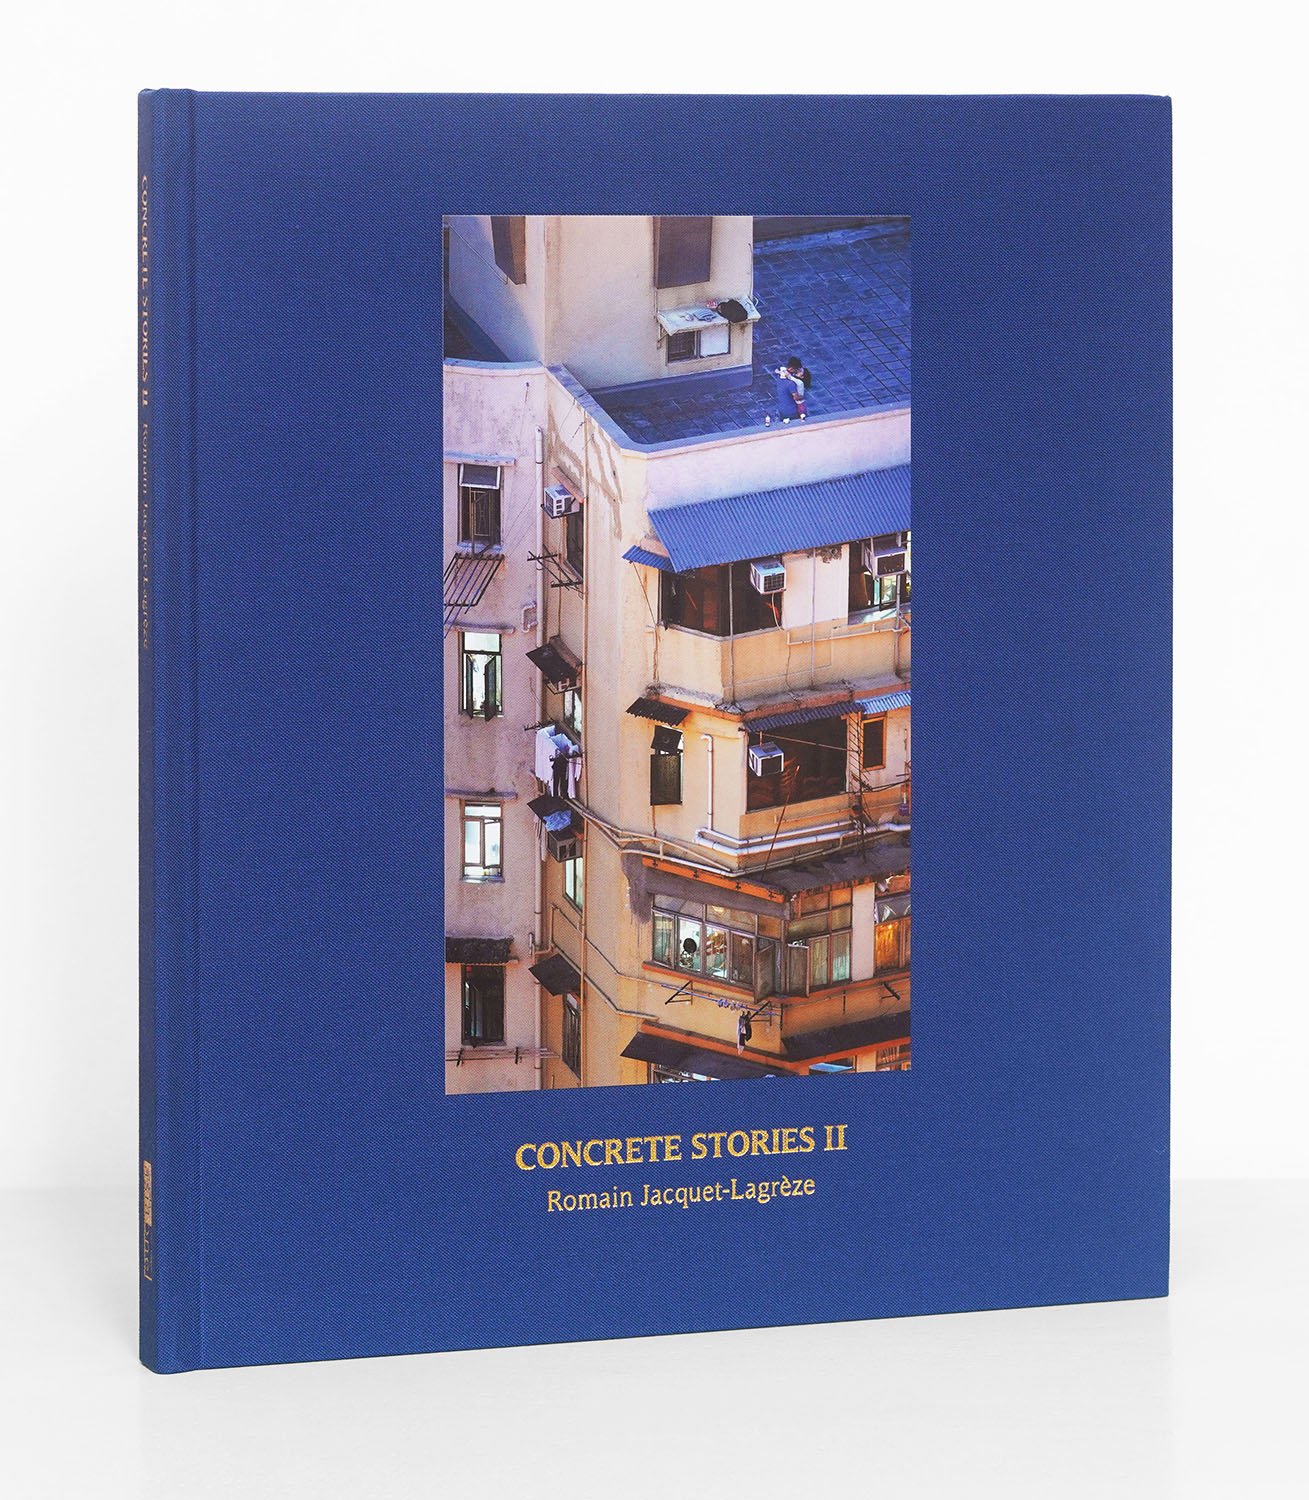 Photo-Book: Concrete Stories II by Romain Jacquet-Lagrèze